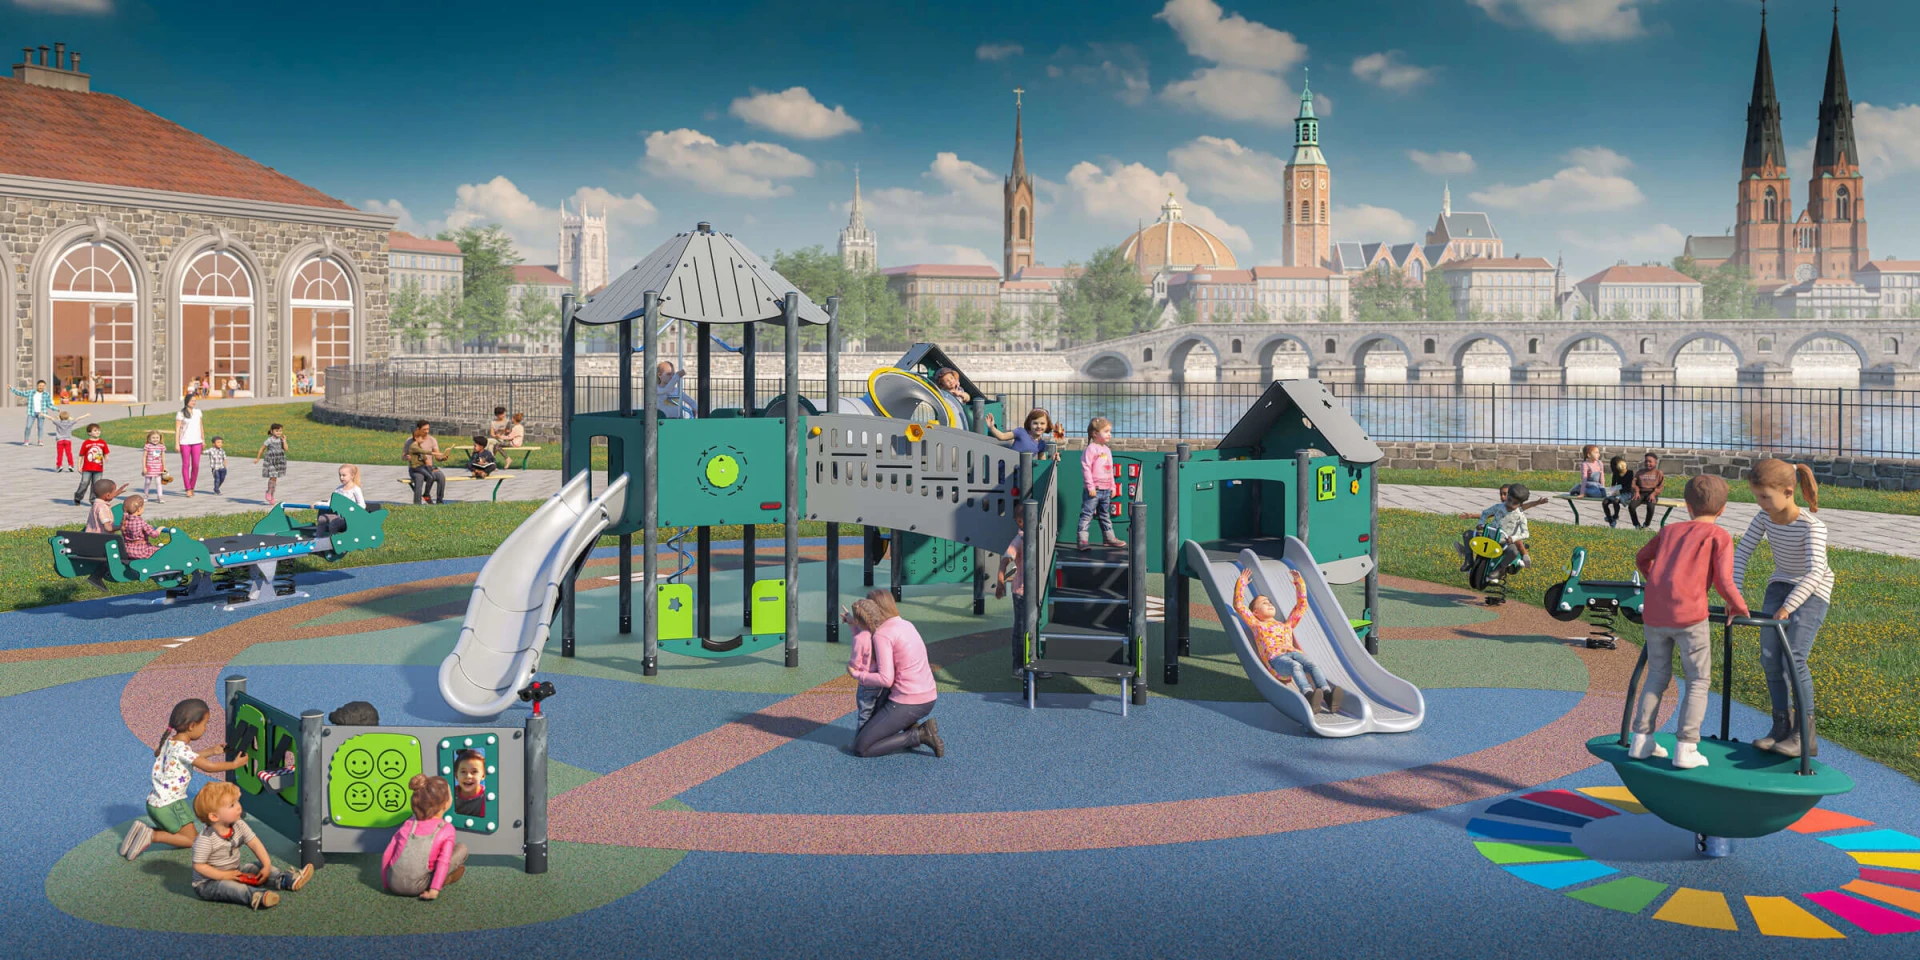 Design-Vorchlag für einen klimafreundlichen Kindergarten-Spielplatz 